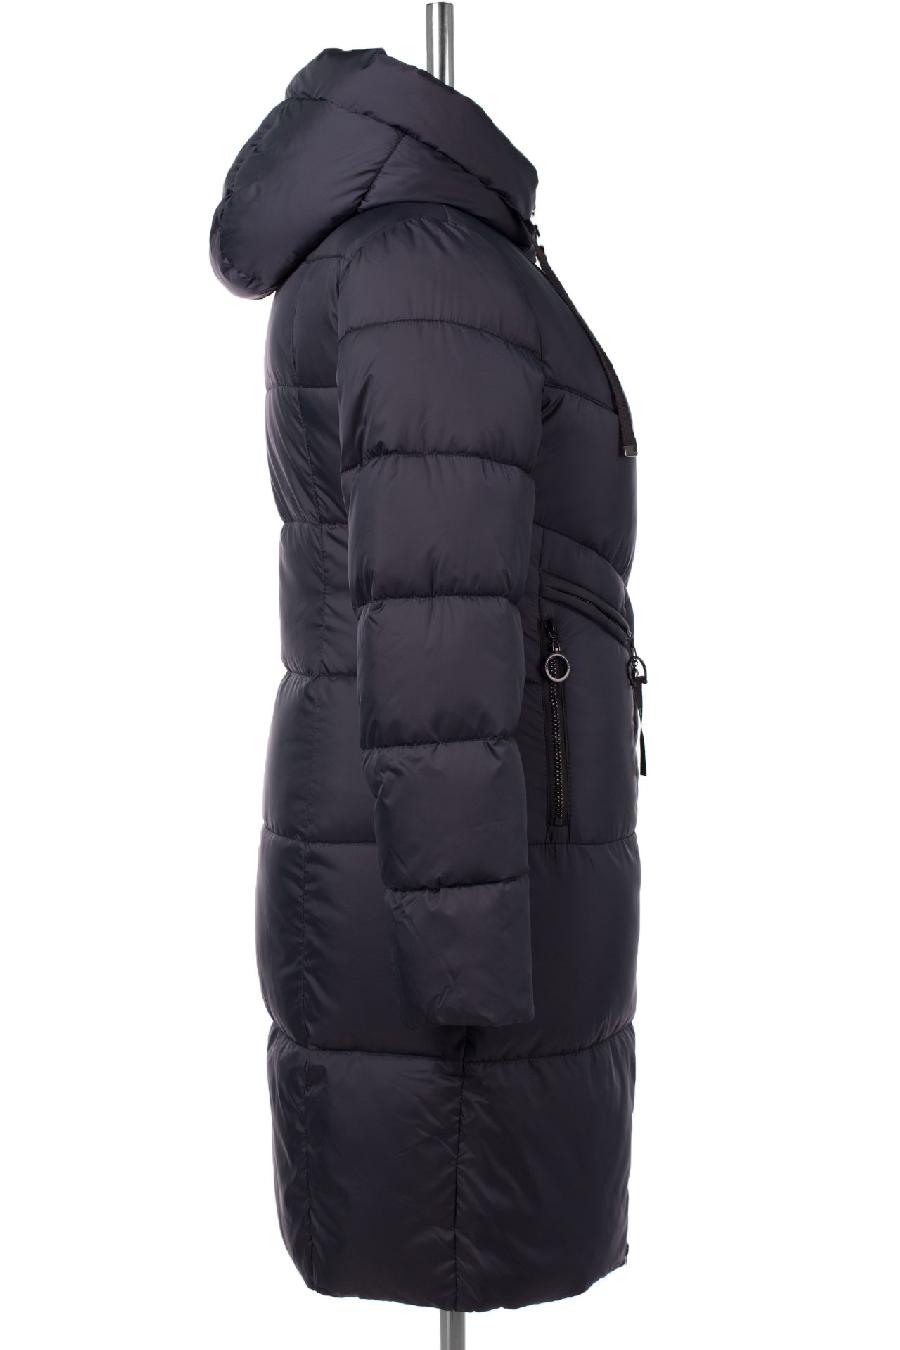 05-2070 Куртка женская зимняя SNOW (Биопух 300) Плащевка синий